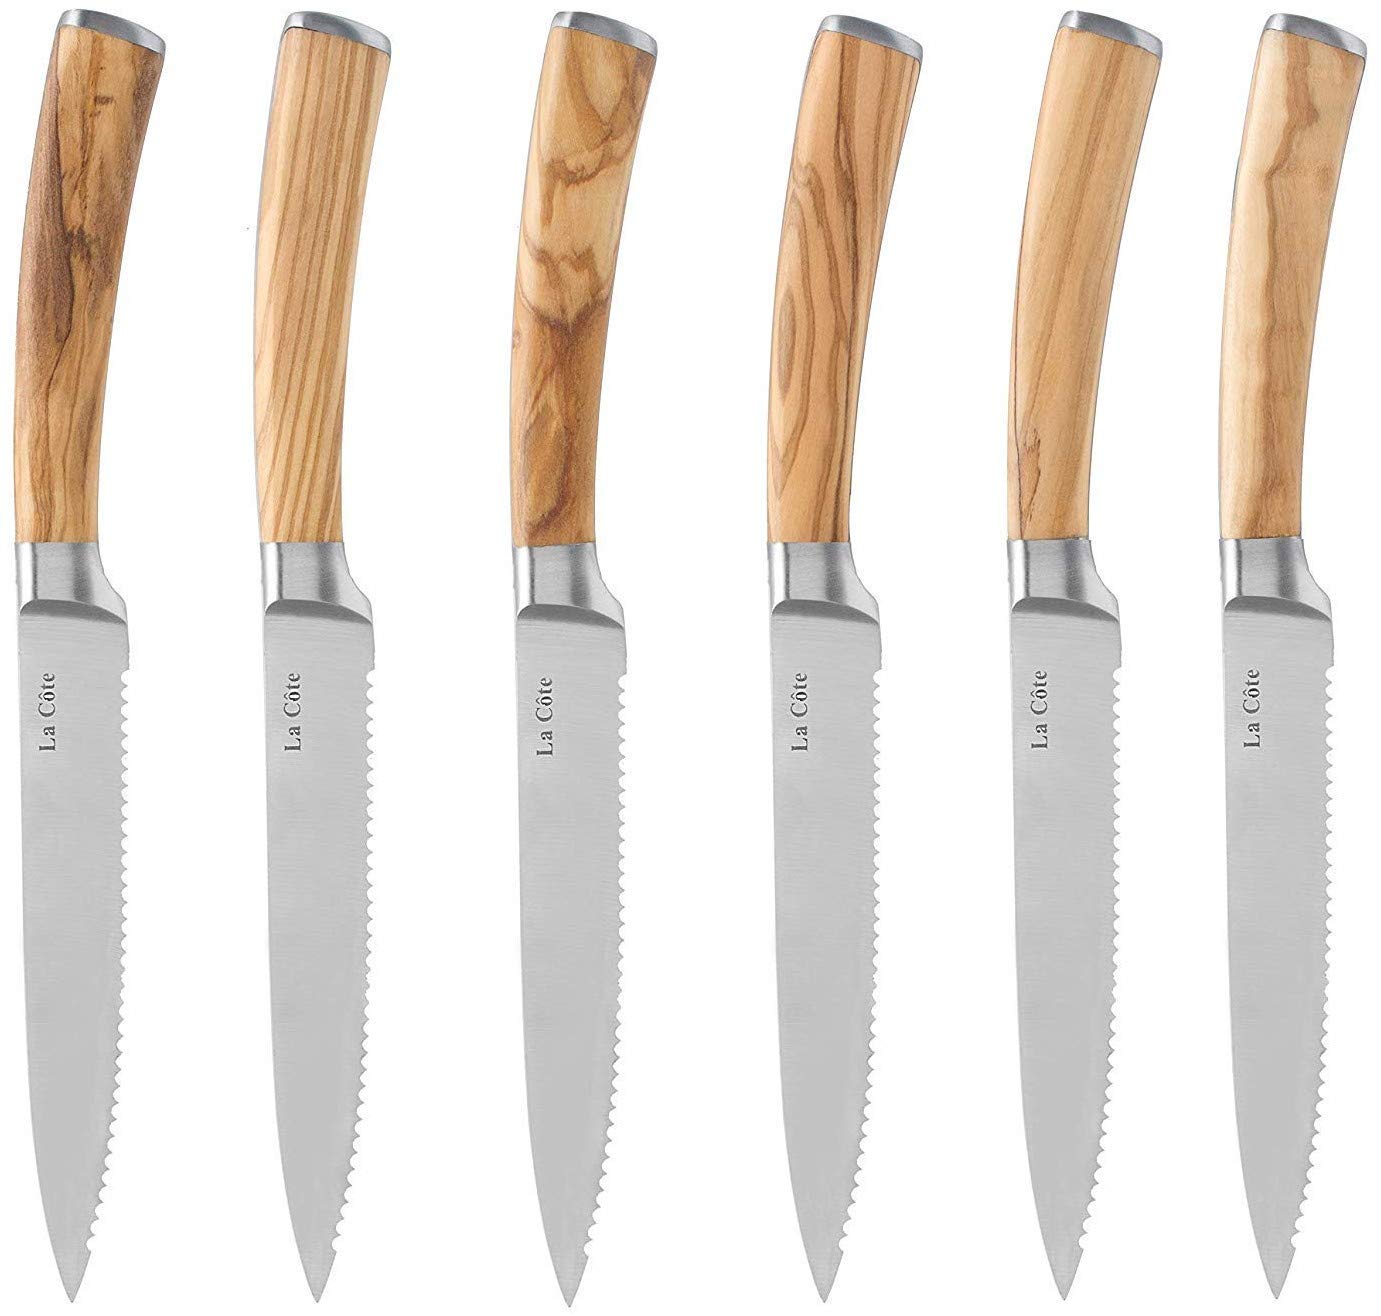 Coltelleria Saladini - Steak Knife - Set of 6 - Olive Wood